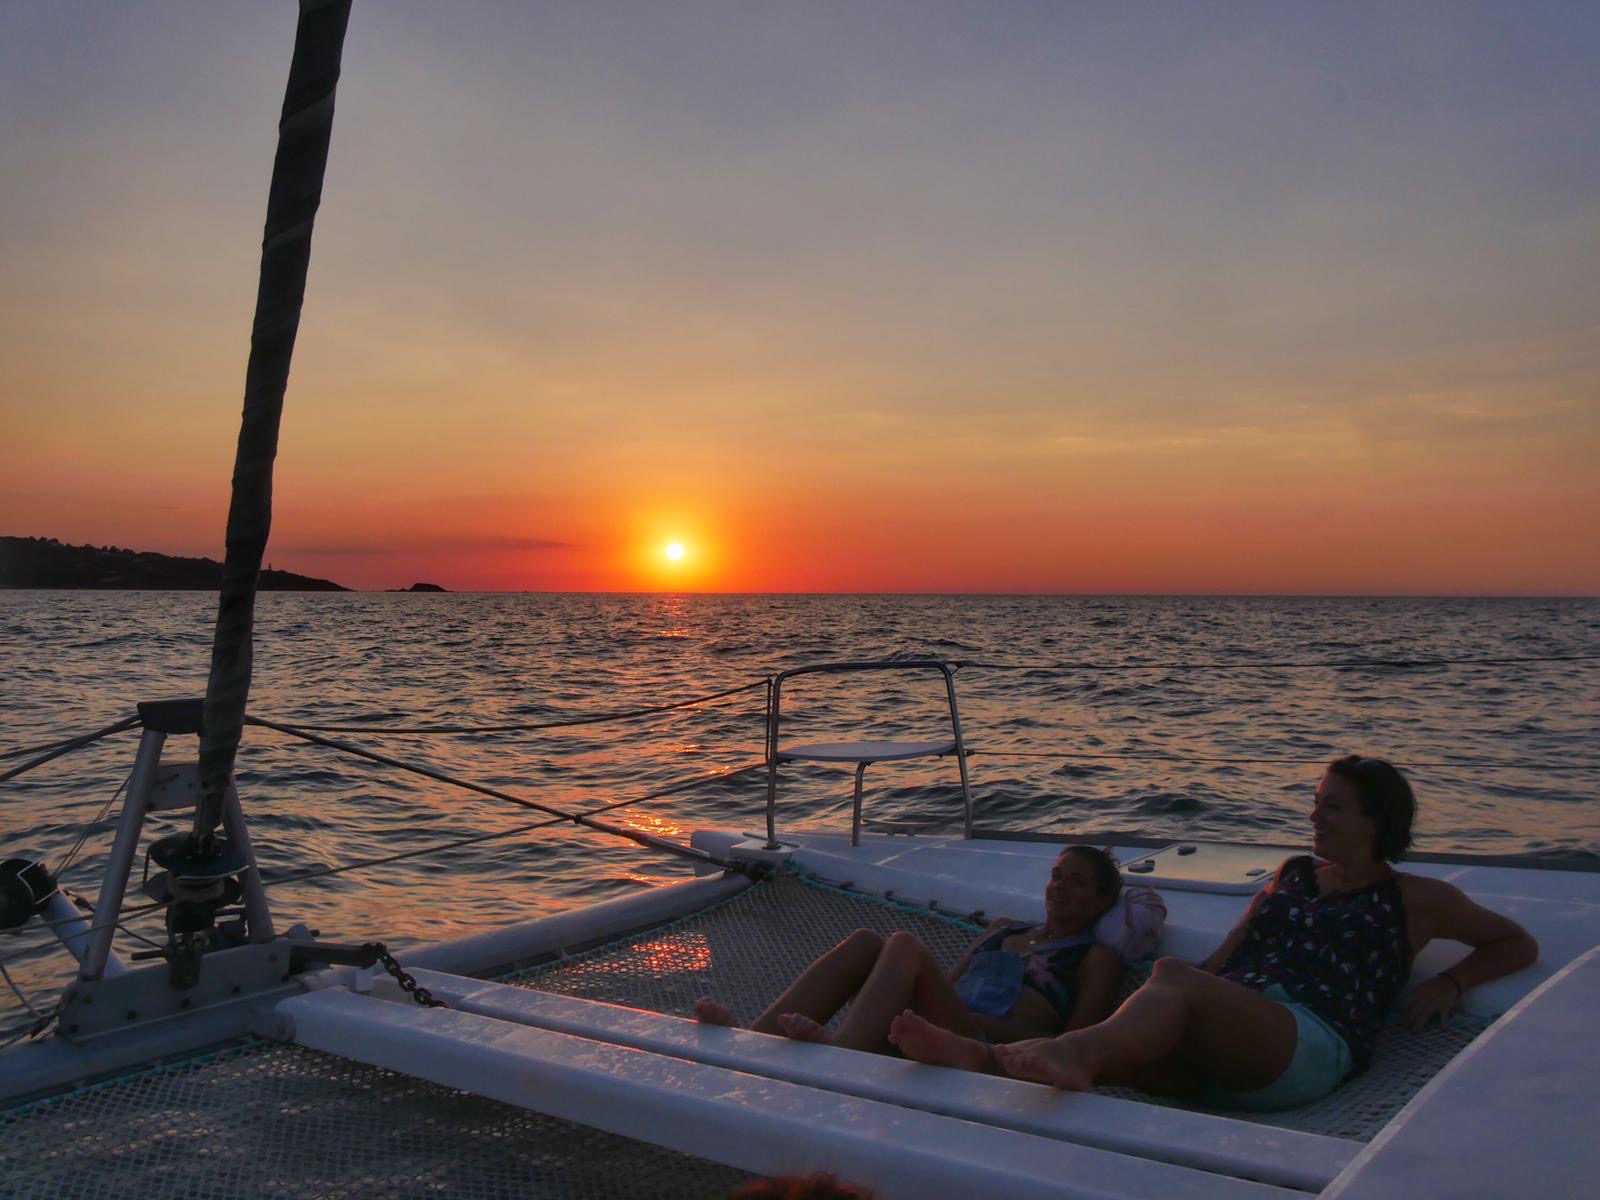 Photo prise sur le pont du catamaran au coucher du soleil